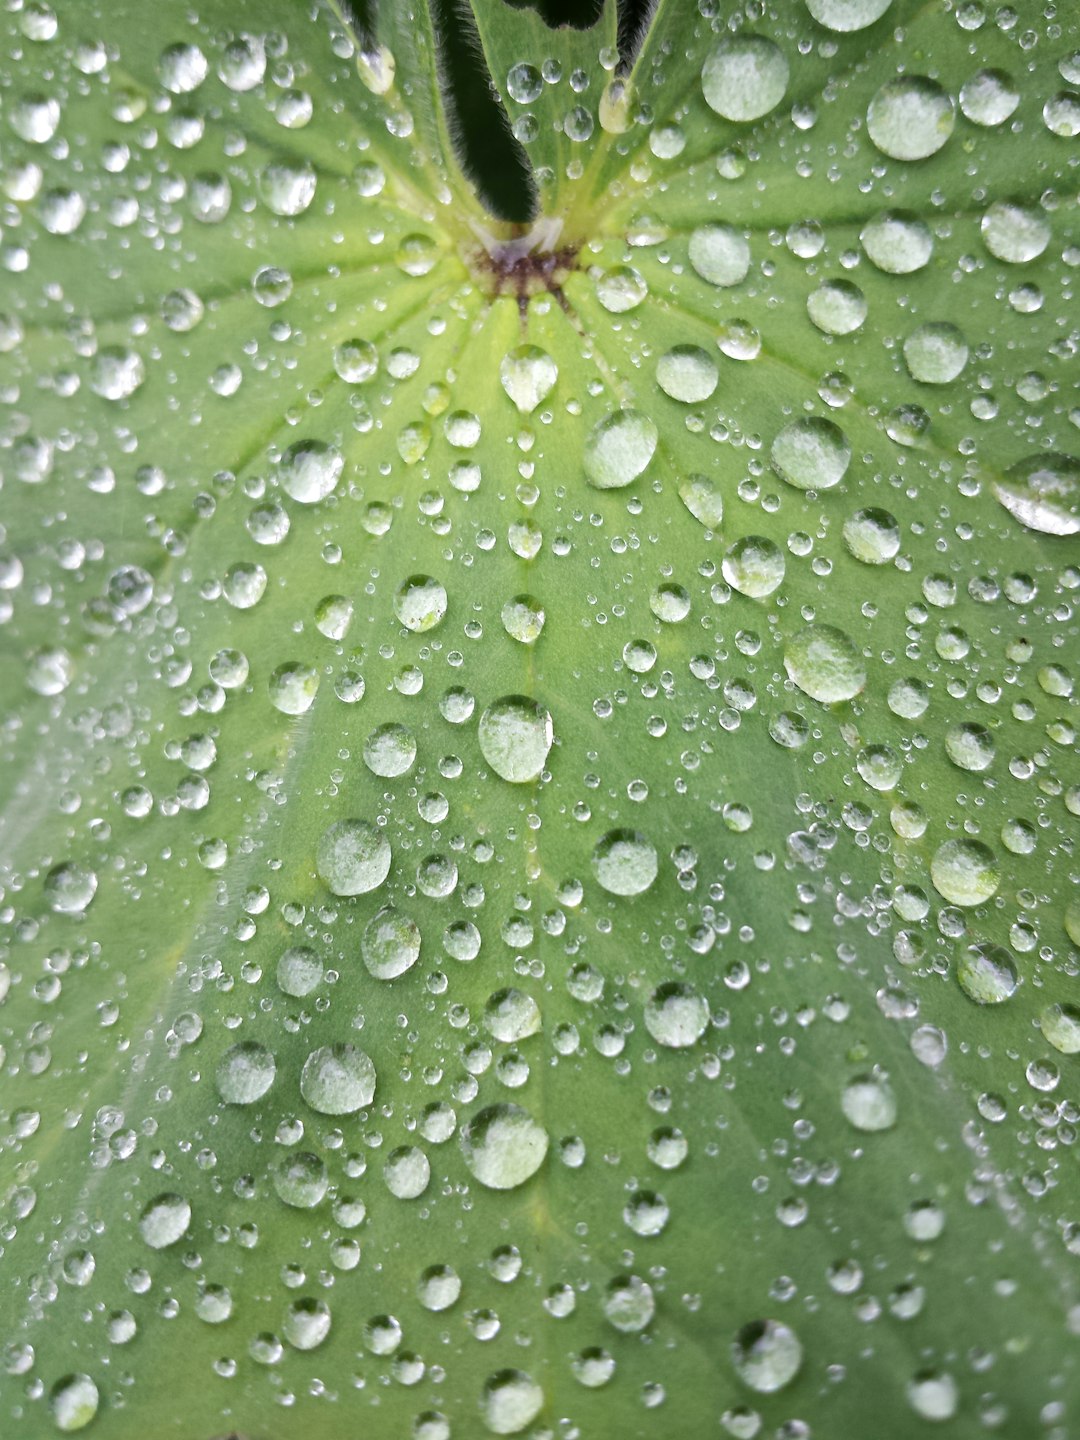 Dew on green foliage in macro